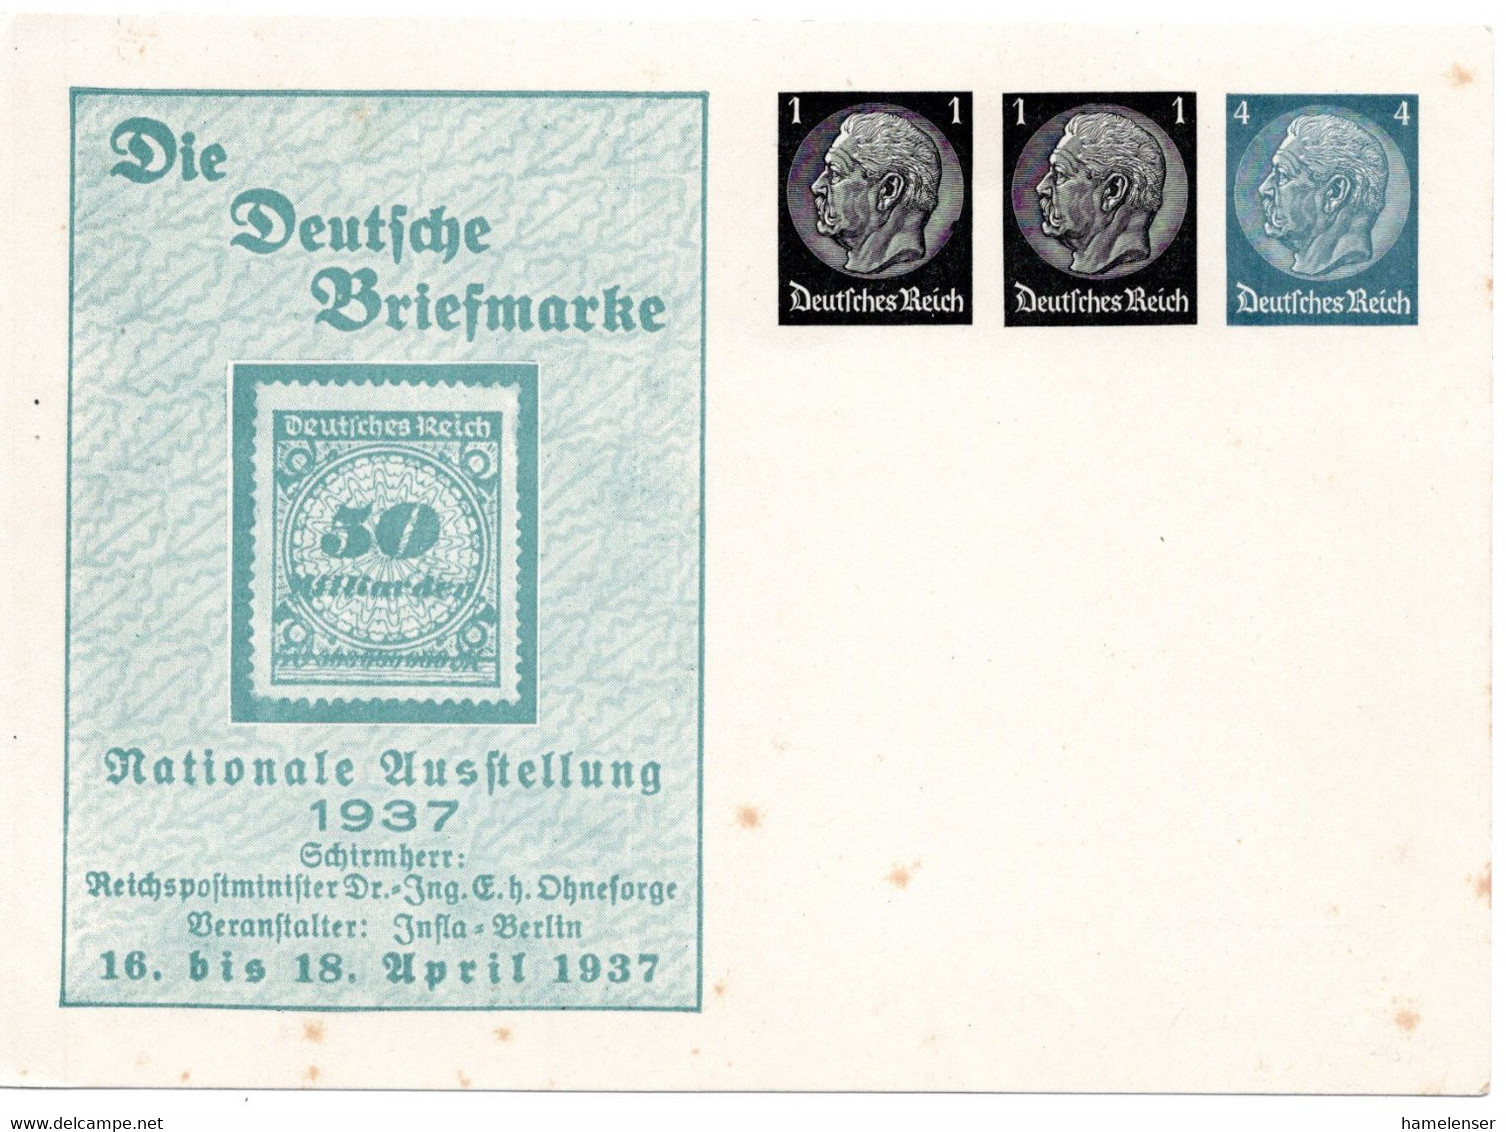 56183 - Deutsches Reich - 1937 - 1&1&4Pfg Hindenburg PGAKte "Die Deutsche Briefmarke", Ungebraucht, Etw Stockig - Stamps On Stamps